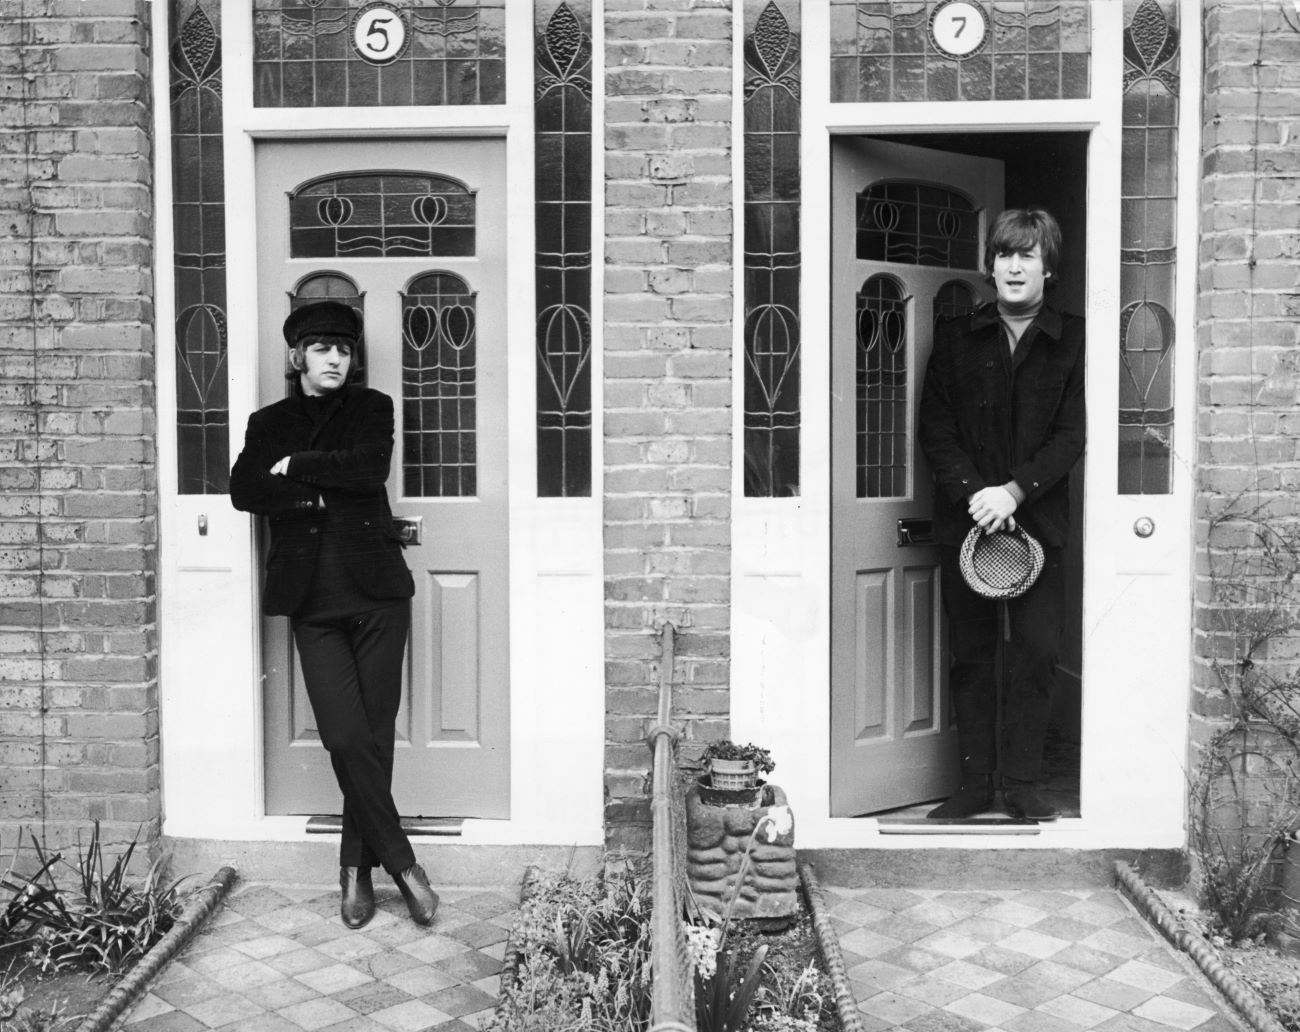 John Lennon, Rolling Stones'tan Charlie Watts'ın Ringo Starr'dan Daha İyi Bir Davulcu Olarak Görülmesinden Nefret Ediyordu